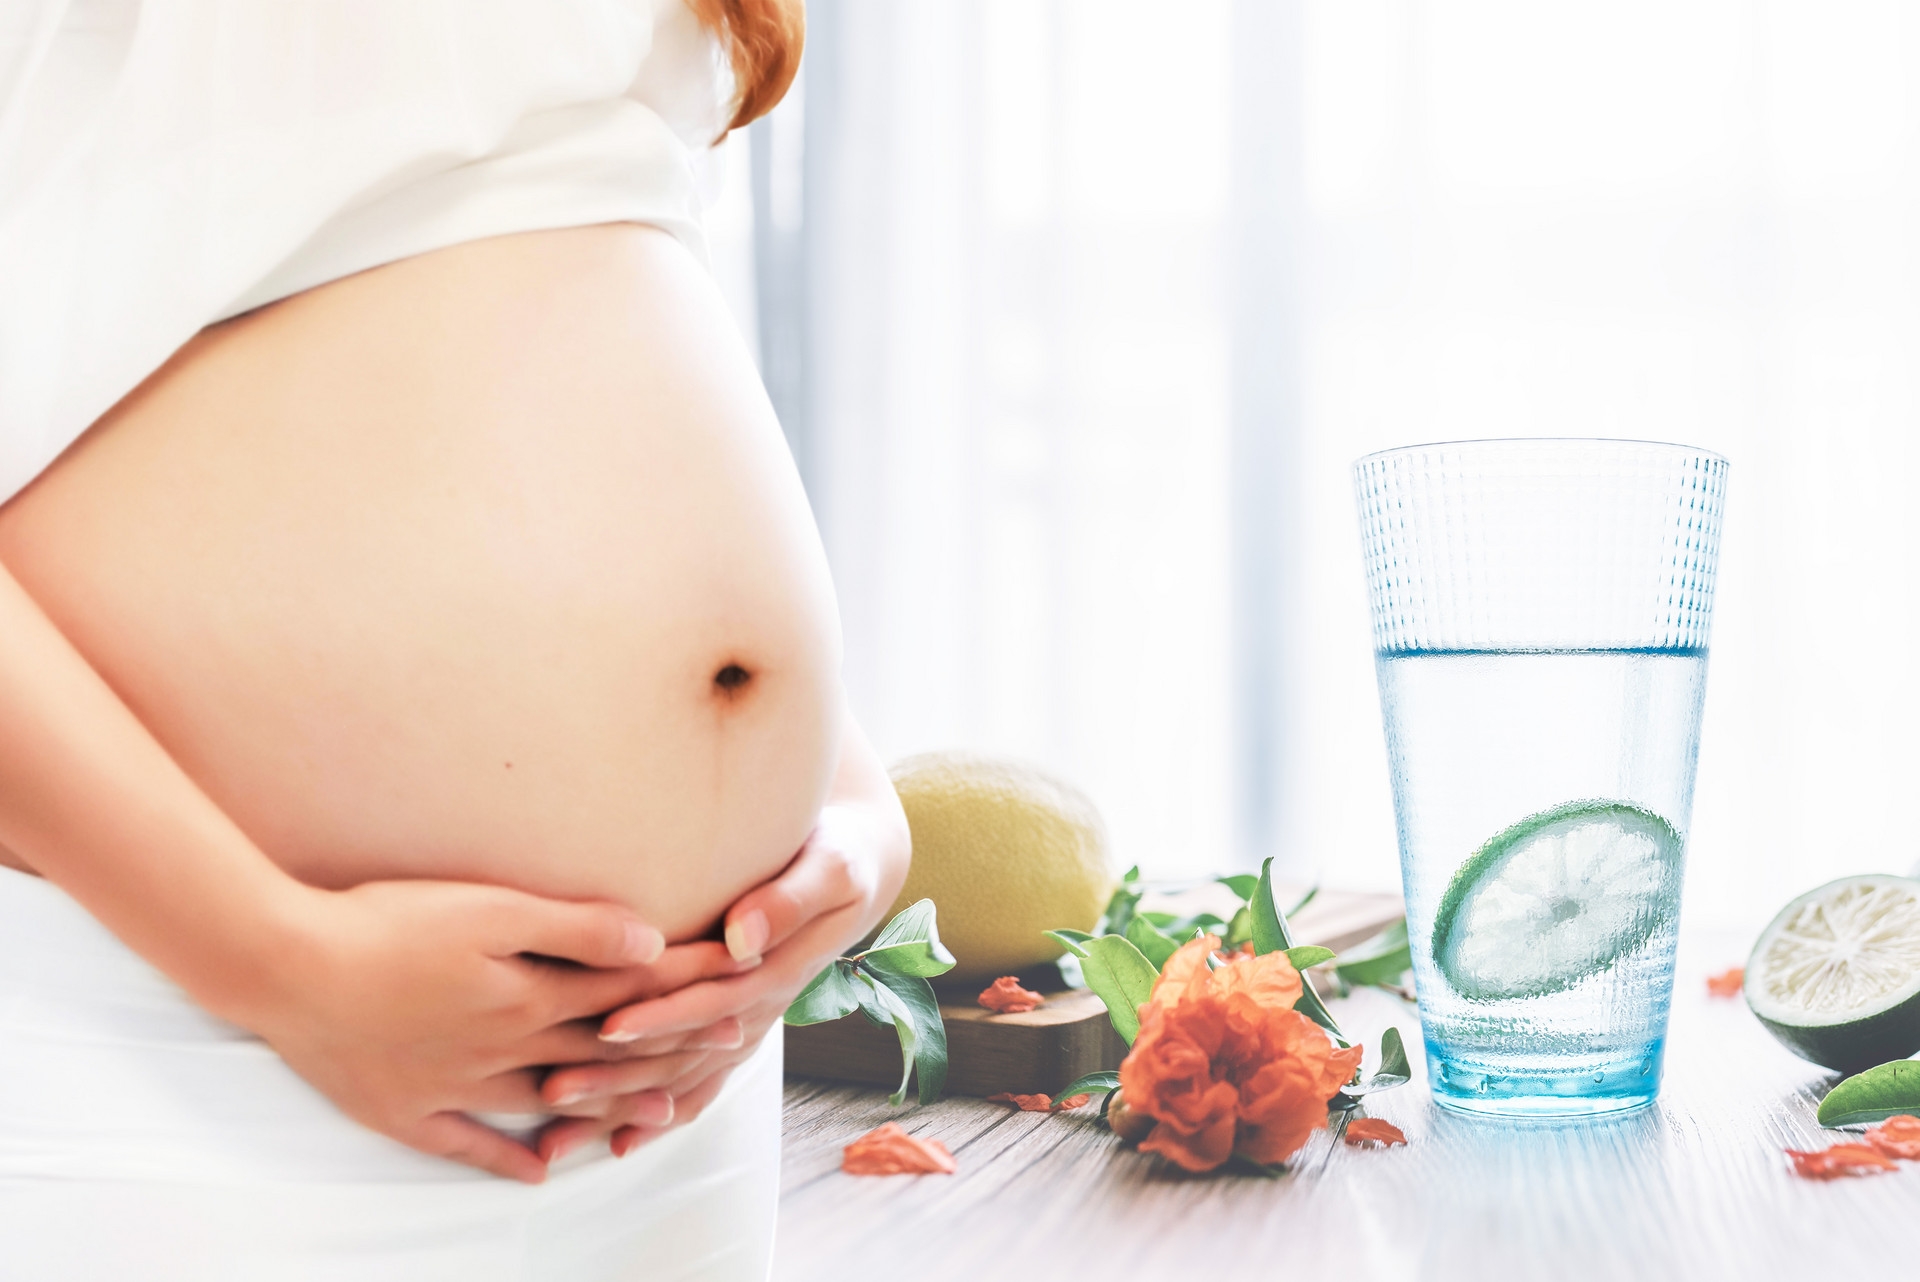 孕妇可以吃瓜吗 - 吃西瓜对胎儿影响、好坏与流产关系 - 姐妹邦